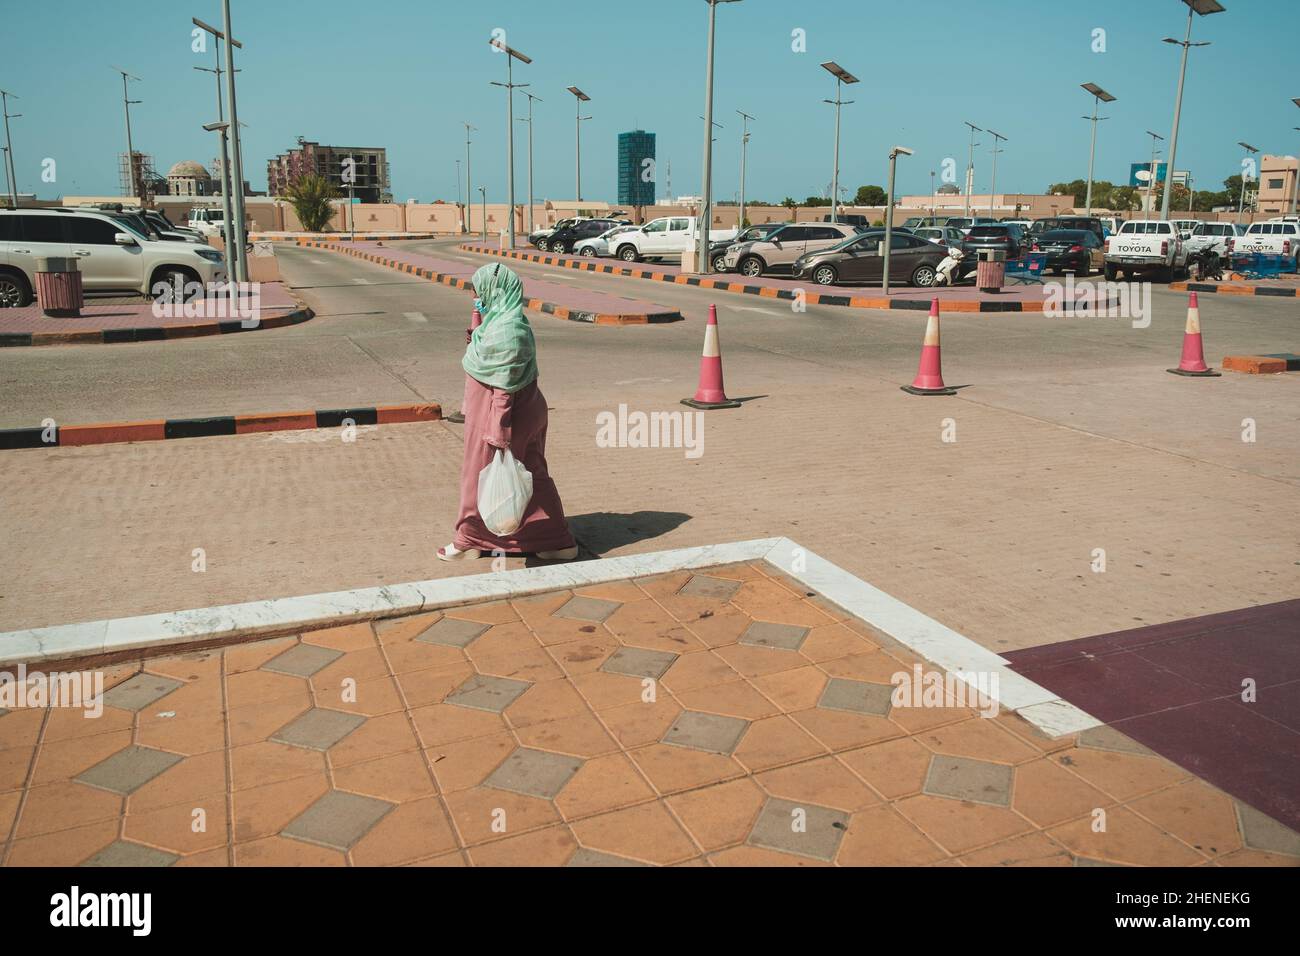 Dschibuti, Dschibuti - 17. Mai 2021: Eine Frau mit grünem Schal läuft auf dem Parkplatz eines Einkaufszentrums in Dschibuti. Redaktionelle Aufnahme in Dschibuti. Stockfoto